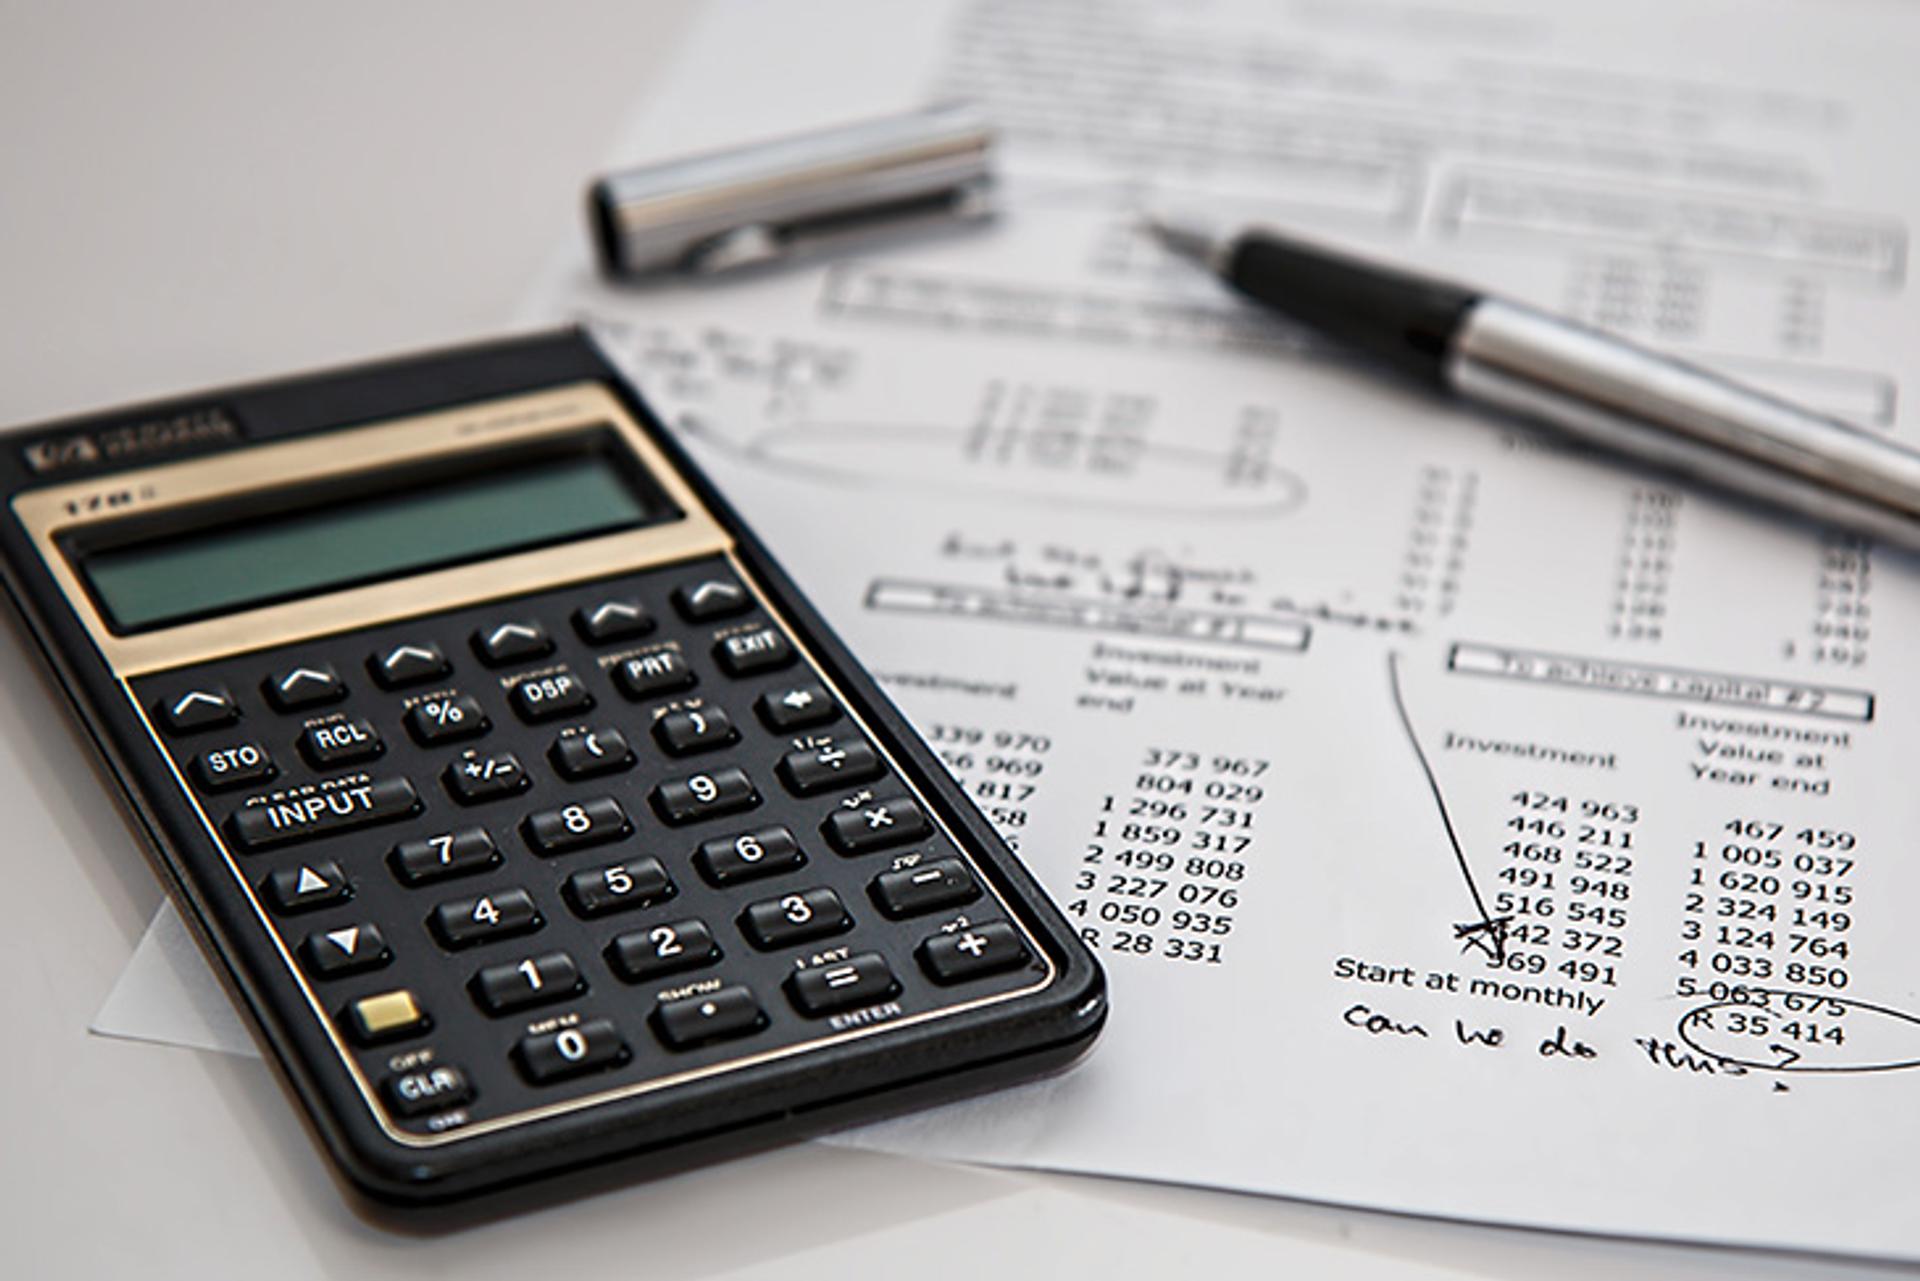 costos, calculo de presupuesto, y otros gastos del restaurante en una hoja de papel, con una calculadora al lado